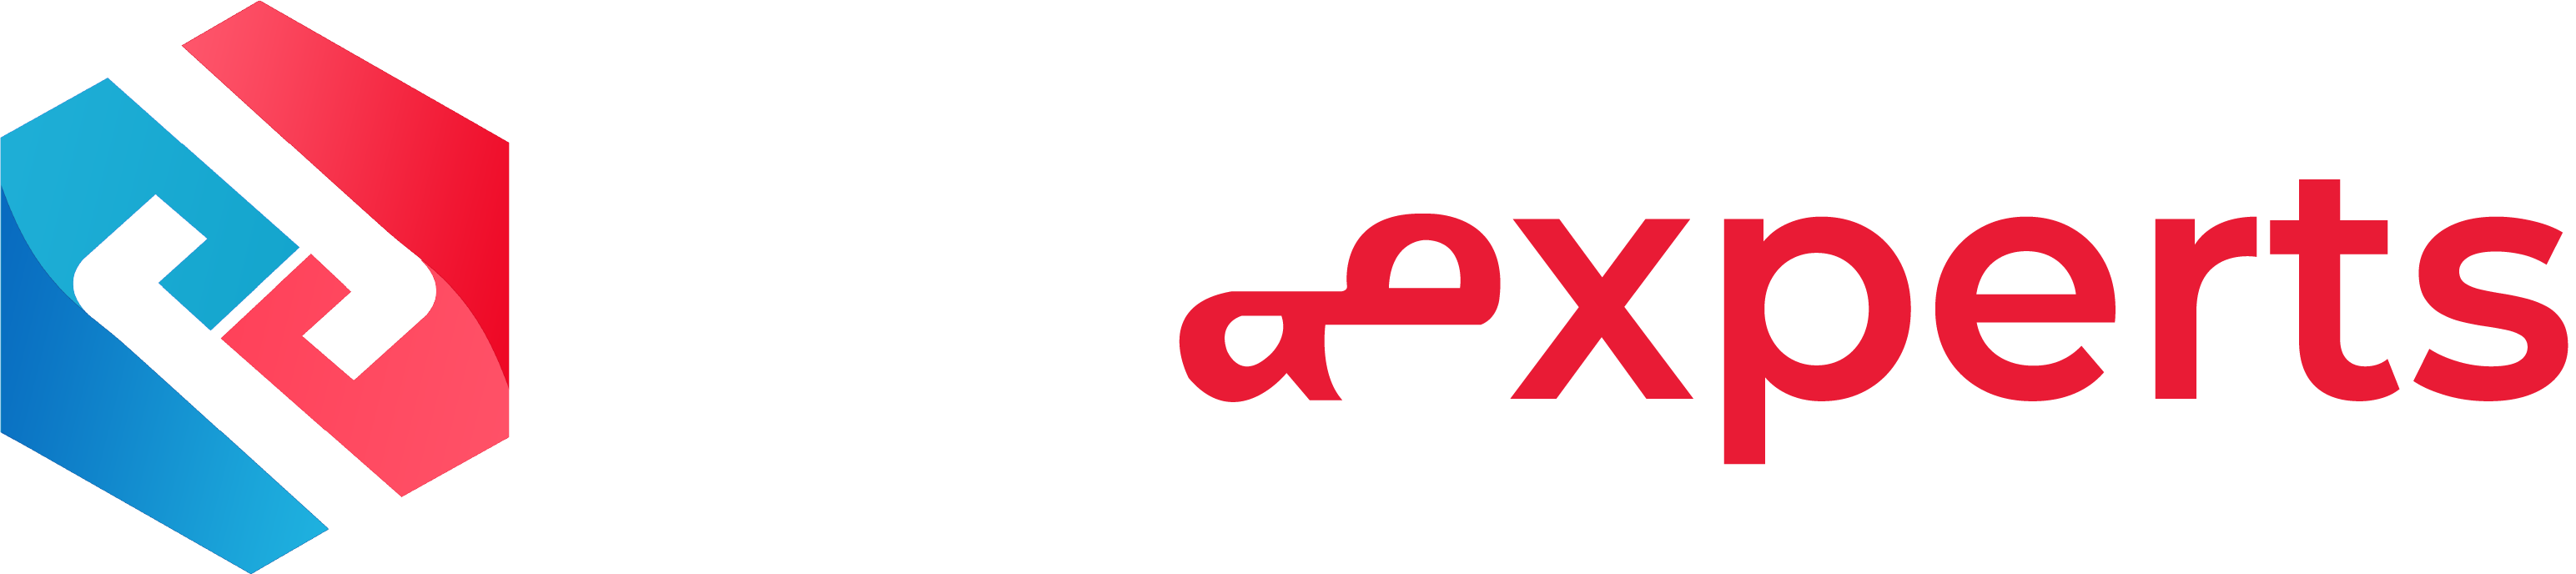 HexaExperts